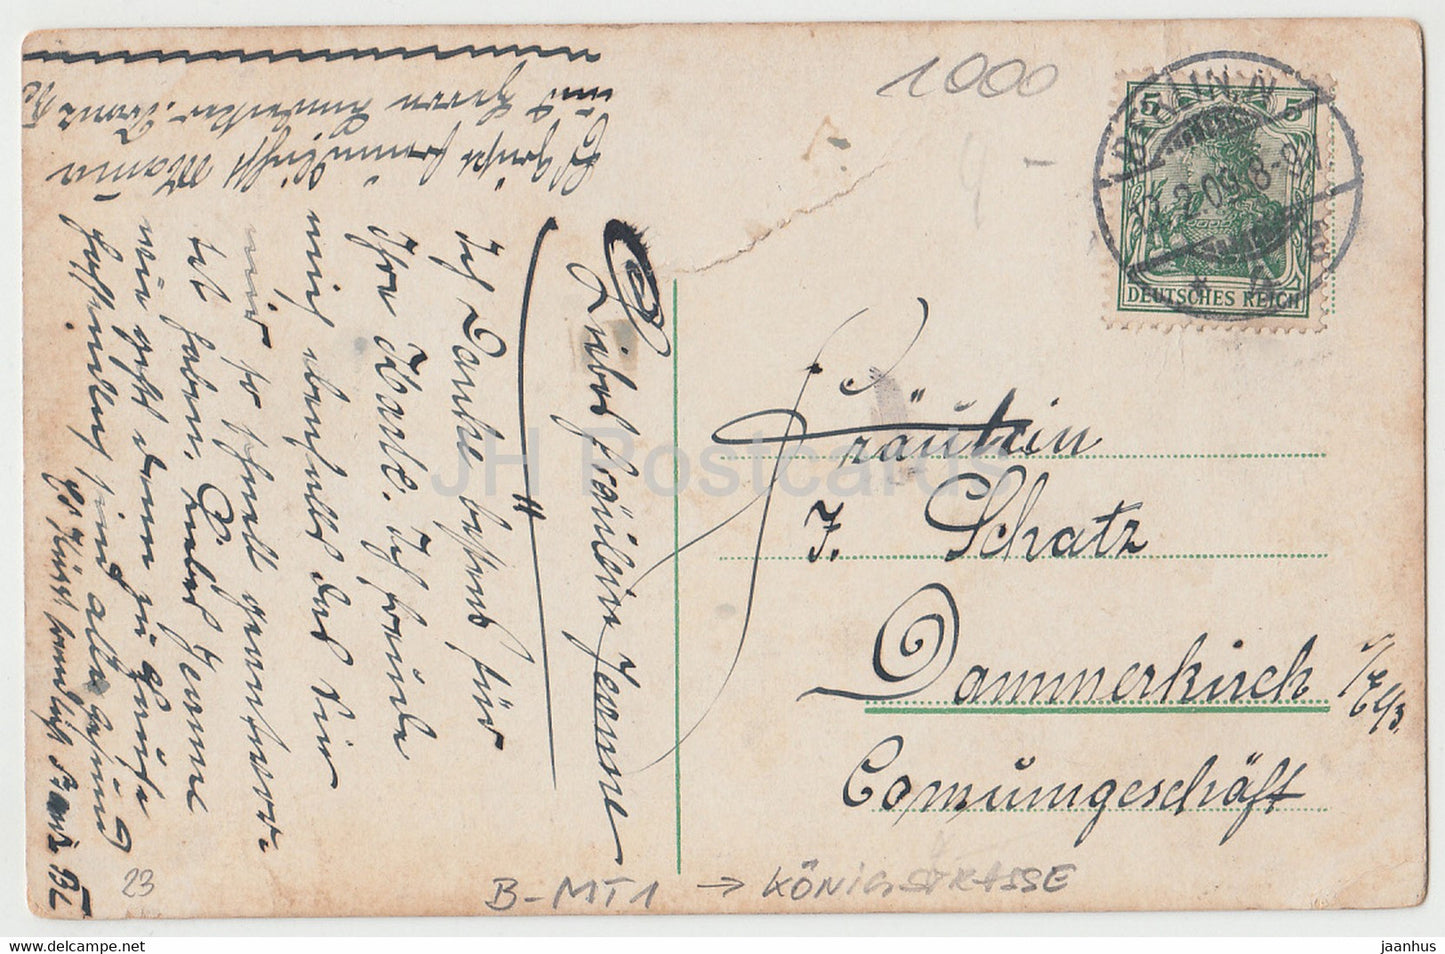 Berlin - Rathaus - Hôtel de ville - tram - 5 - carte postale ancienne - 1909 - Allemagne - utilisé